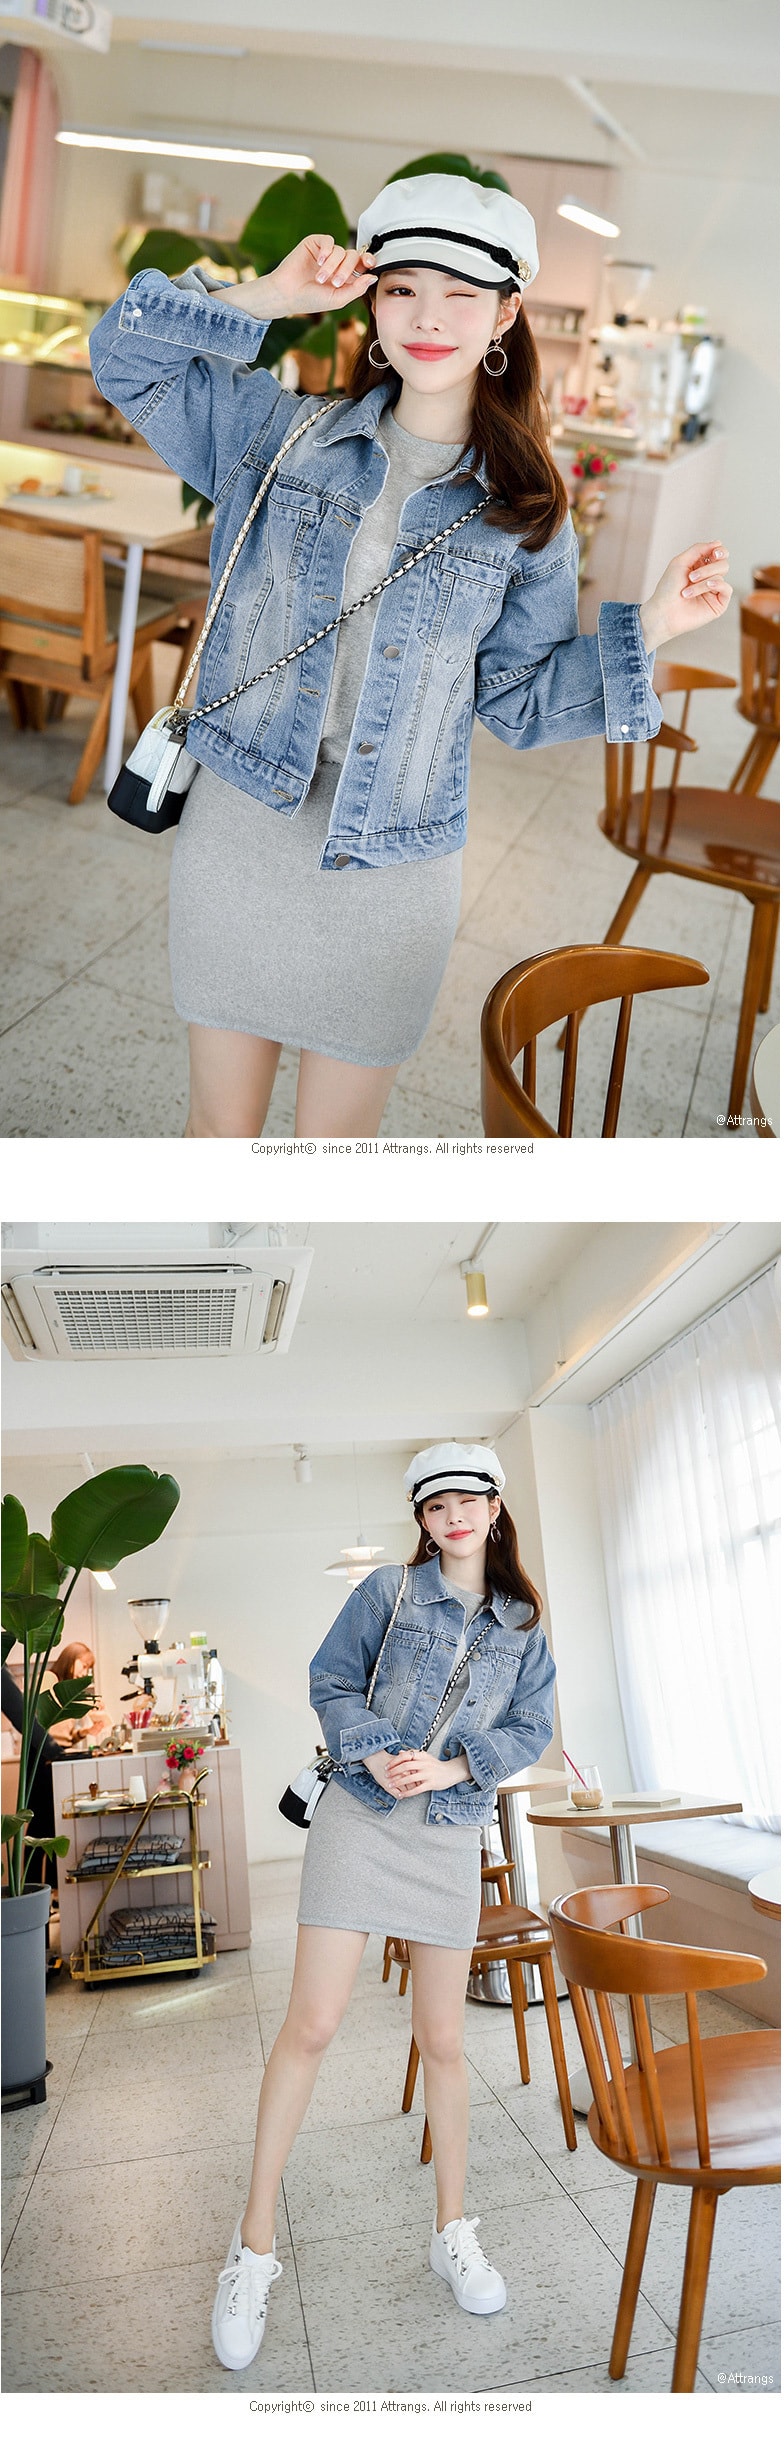 【韩国直邮】ATTRANGS 舒适感十足的迷你长度的卫衣连衣裙 灰色 均码